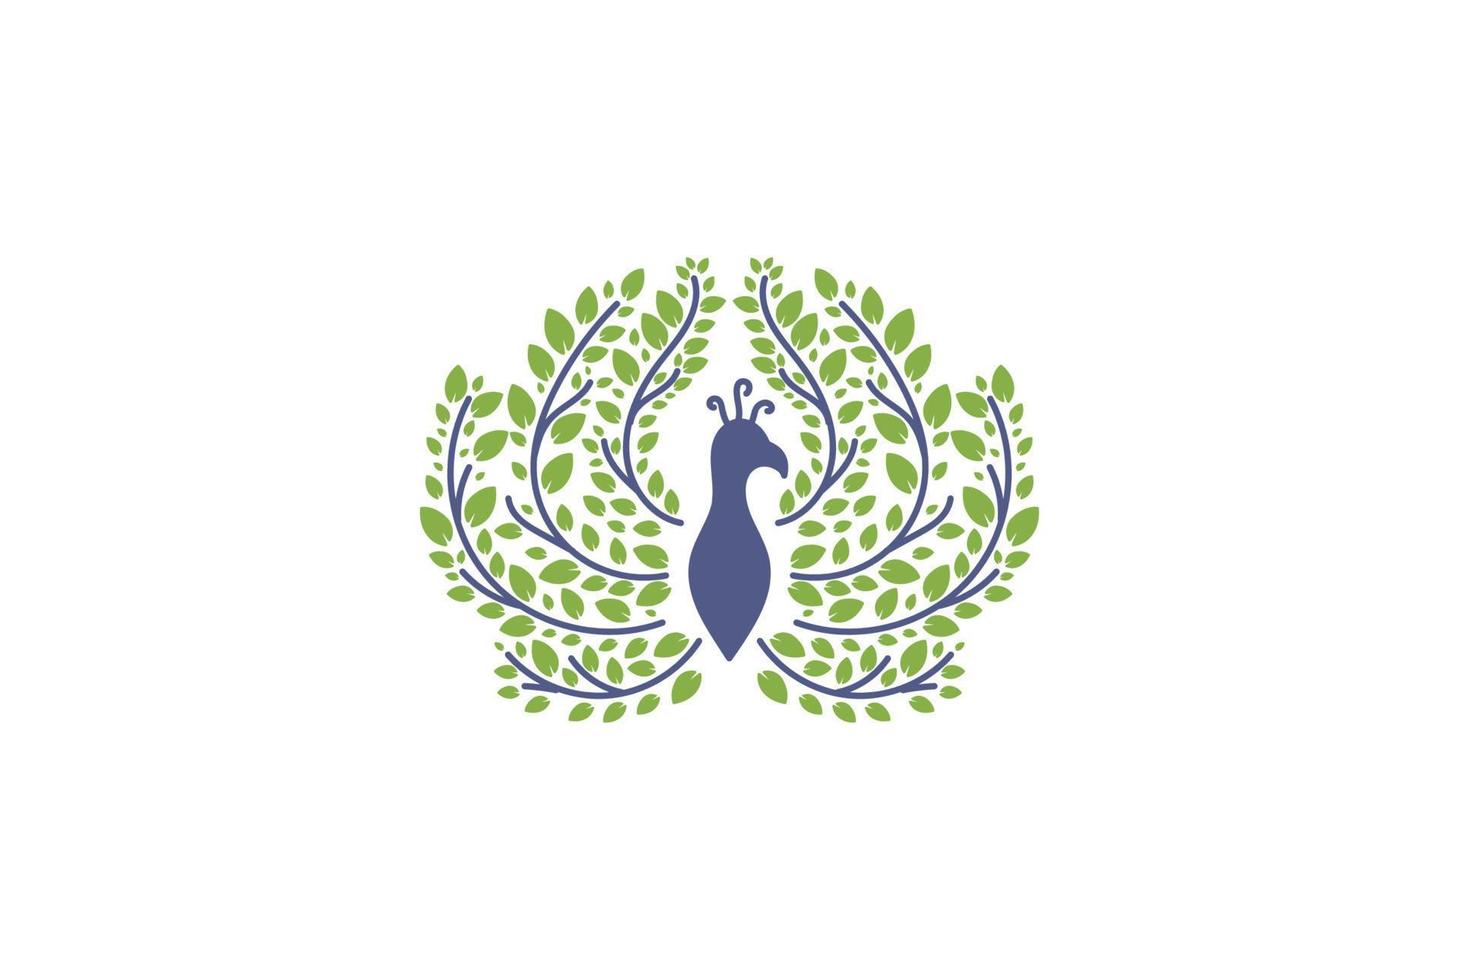 pauw pauw vogel met vers groen blad laat gebladerte logo ontwerp vector